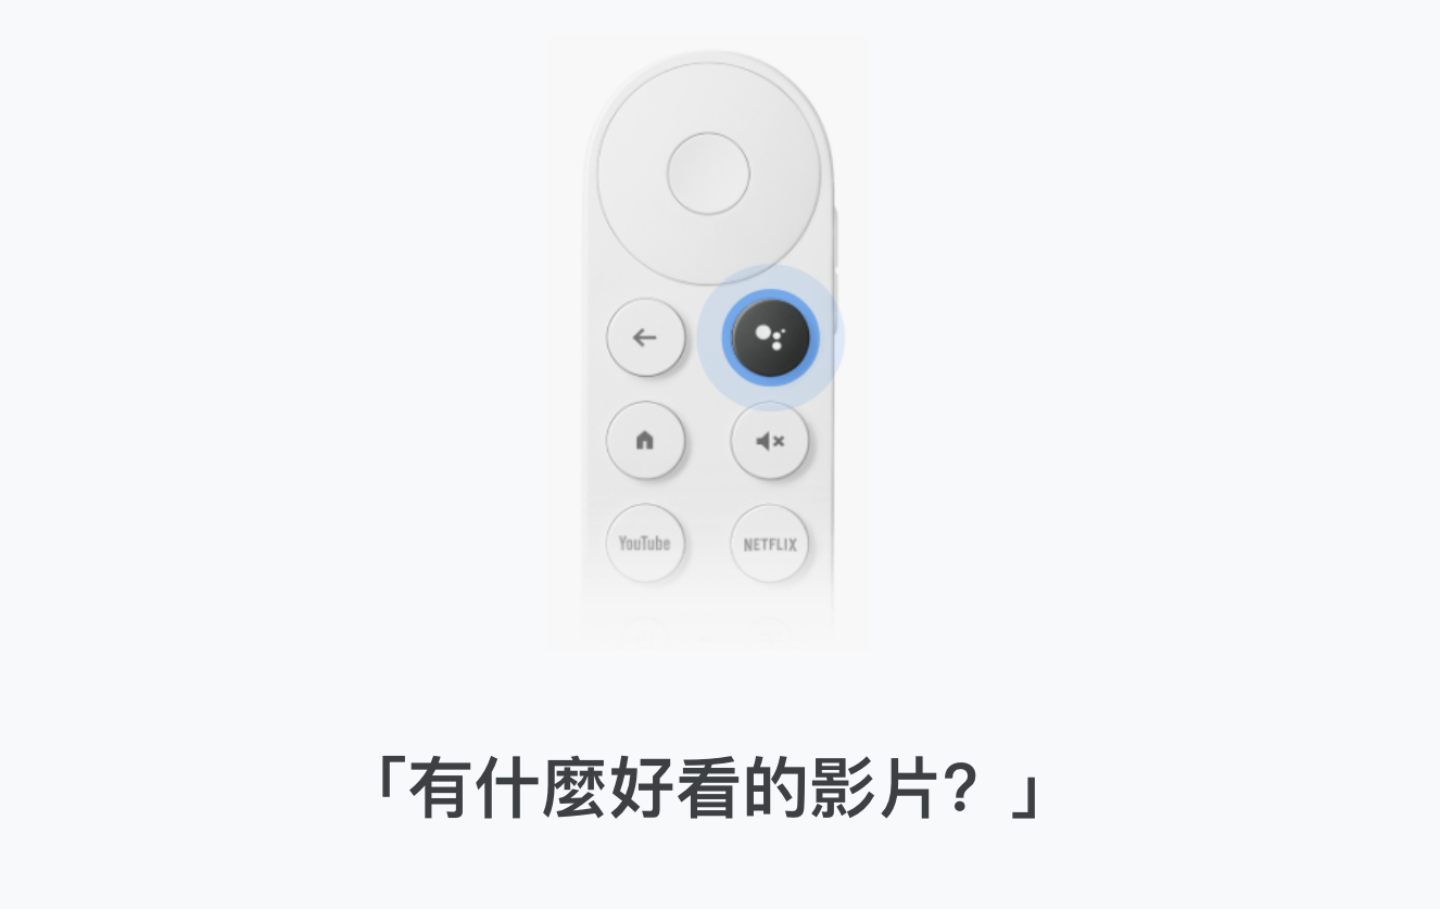 全新 Google Chromecast  正式登臺！支援 Google TV 和智慧聲控，售價新臺幣 1,999 元